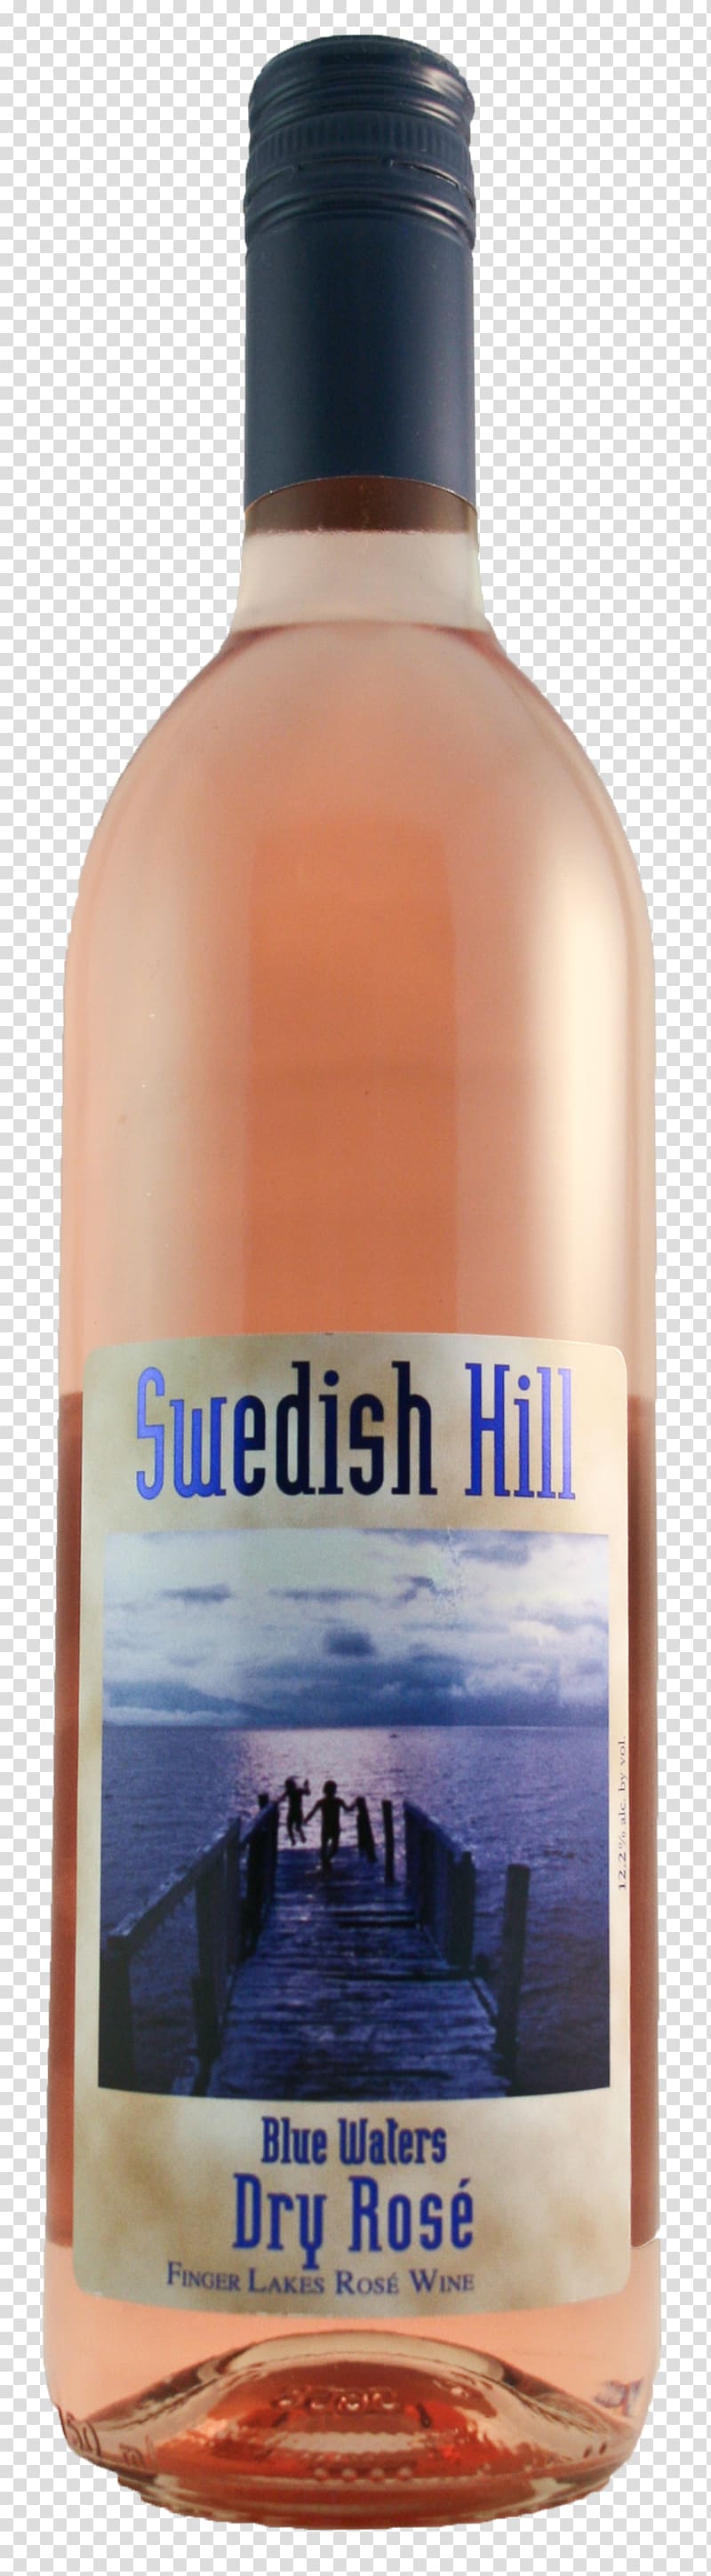 Liqueur Chardonnay Bottle, dry rose transparent background PNG clipart